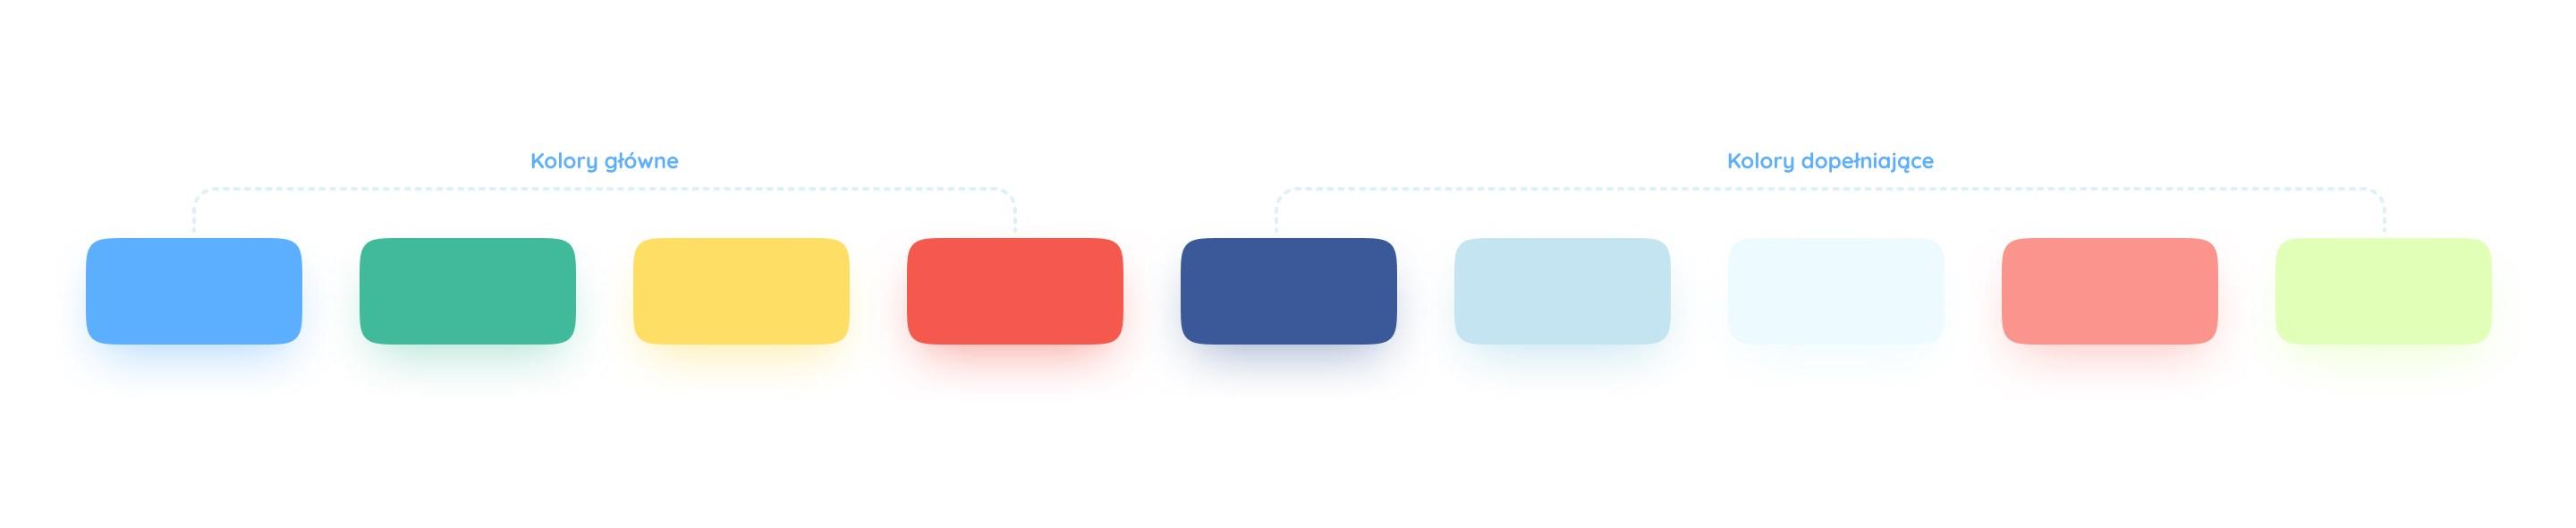 Edikids - design kolorystyczny aplikacji - paleta kolorów